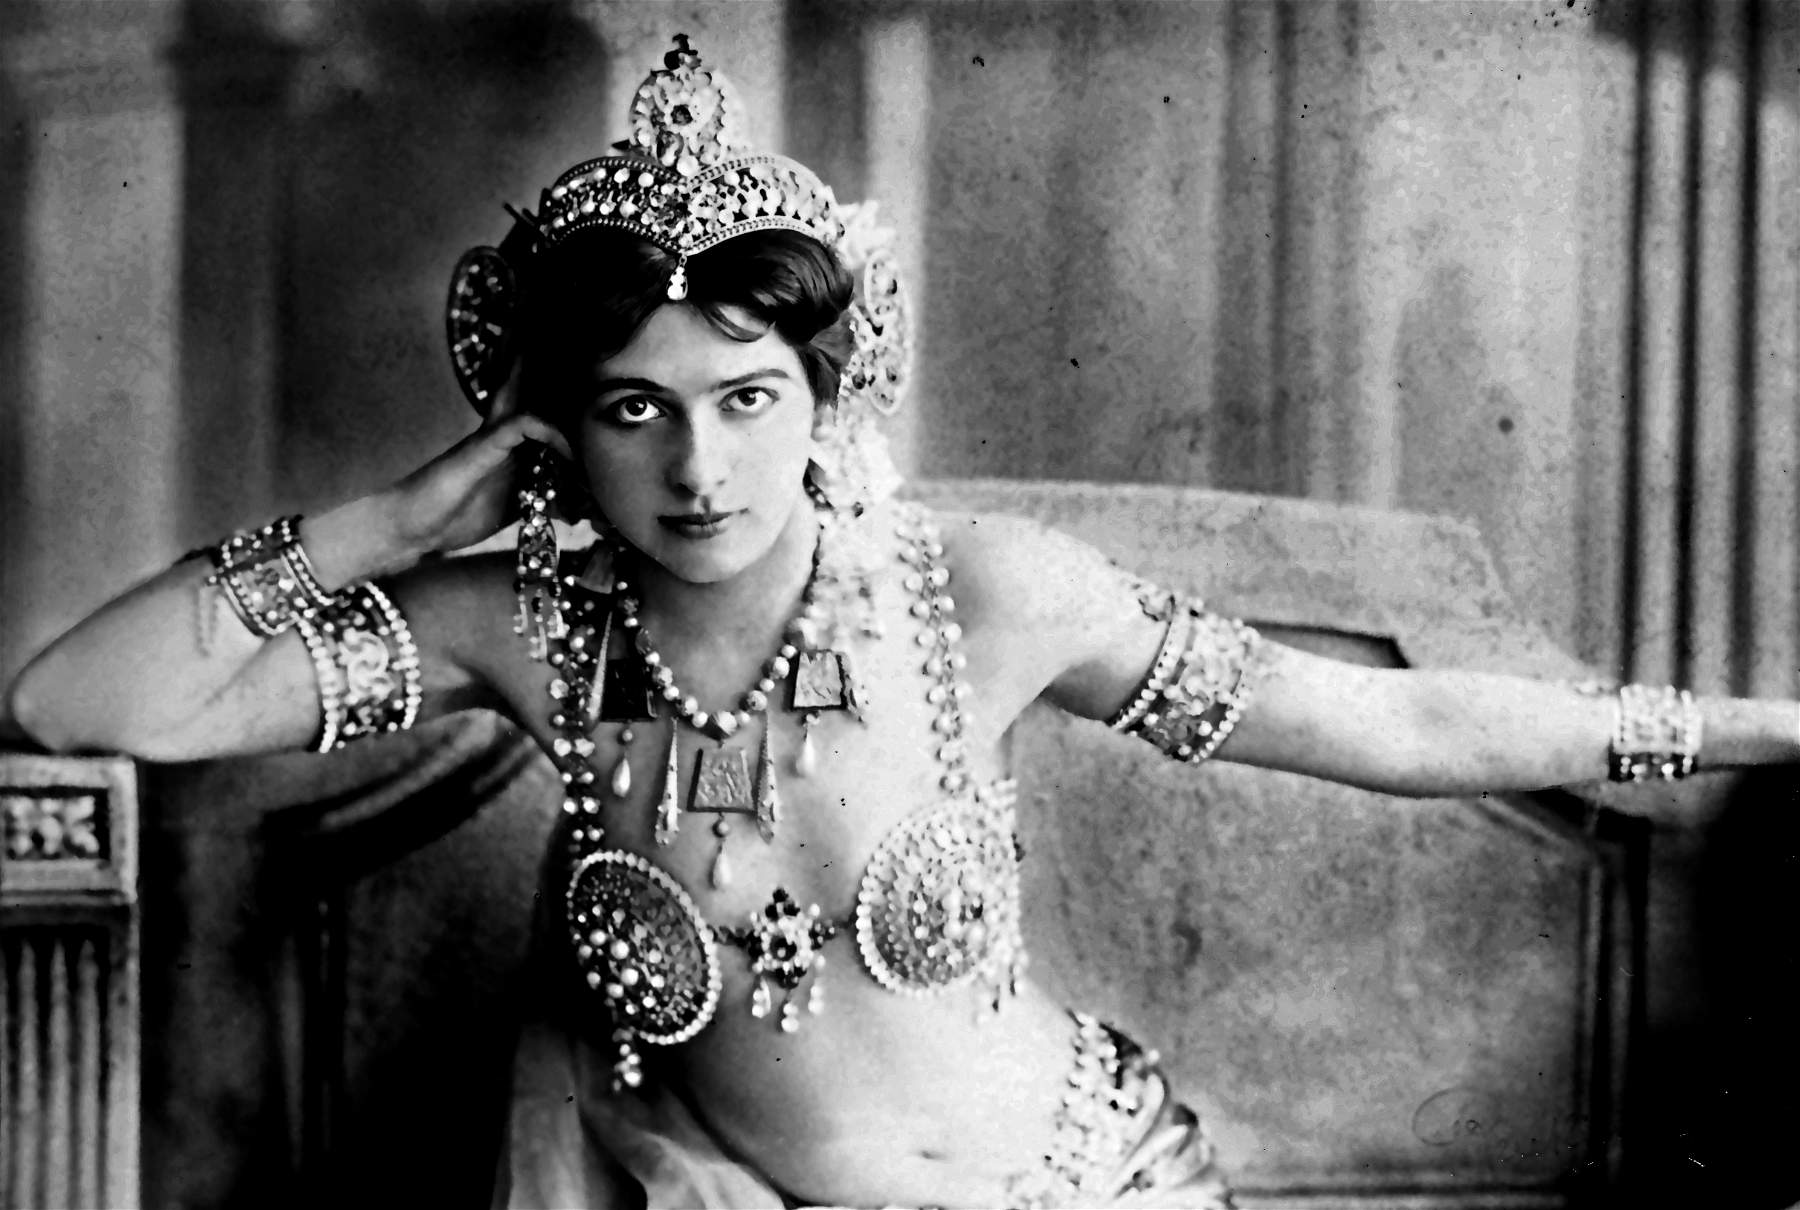 La plus grande exposition jamais organisée sur Mata Hari aux Pays-Bas